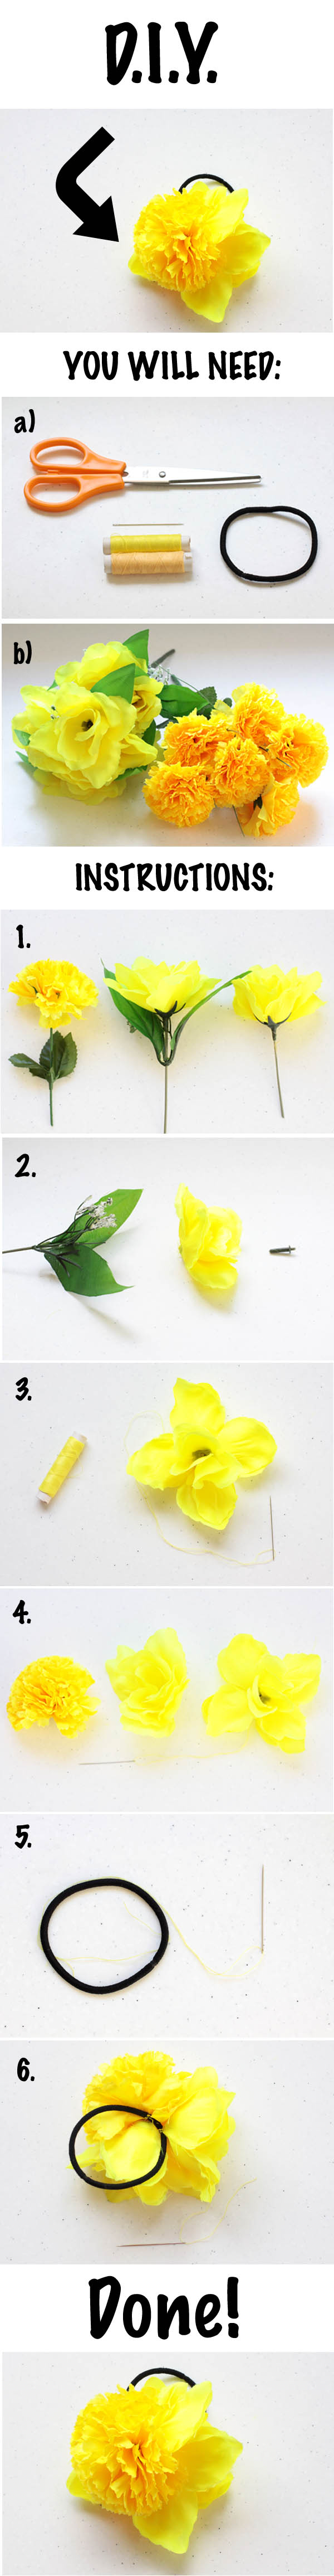 Diy fabric flower hair tie numbers